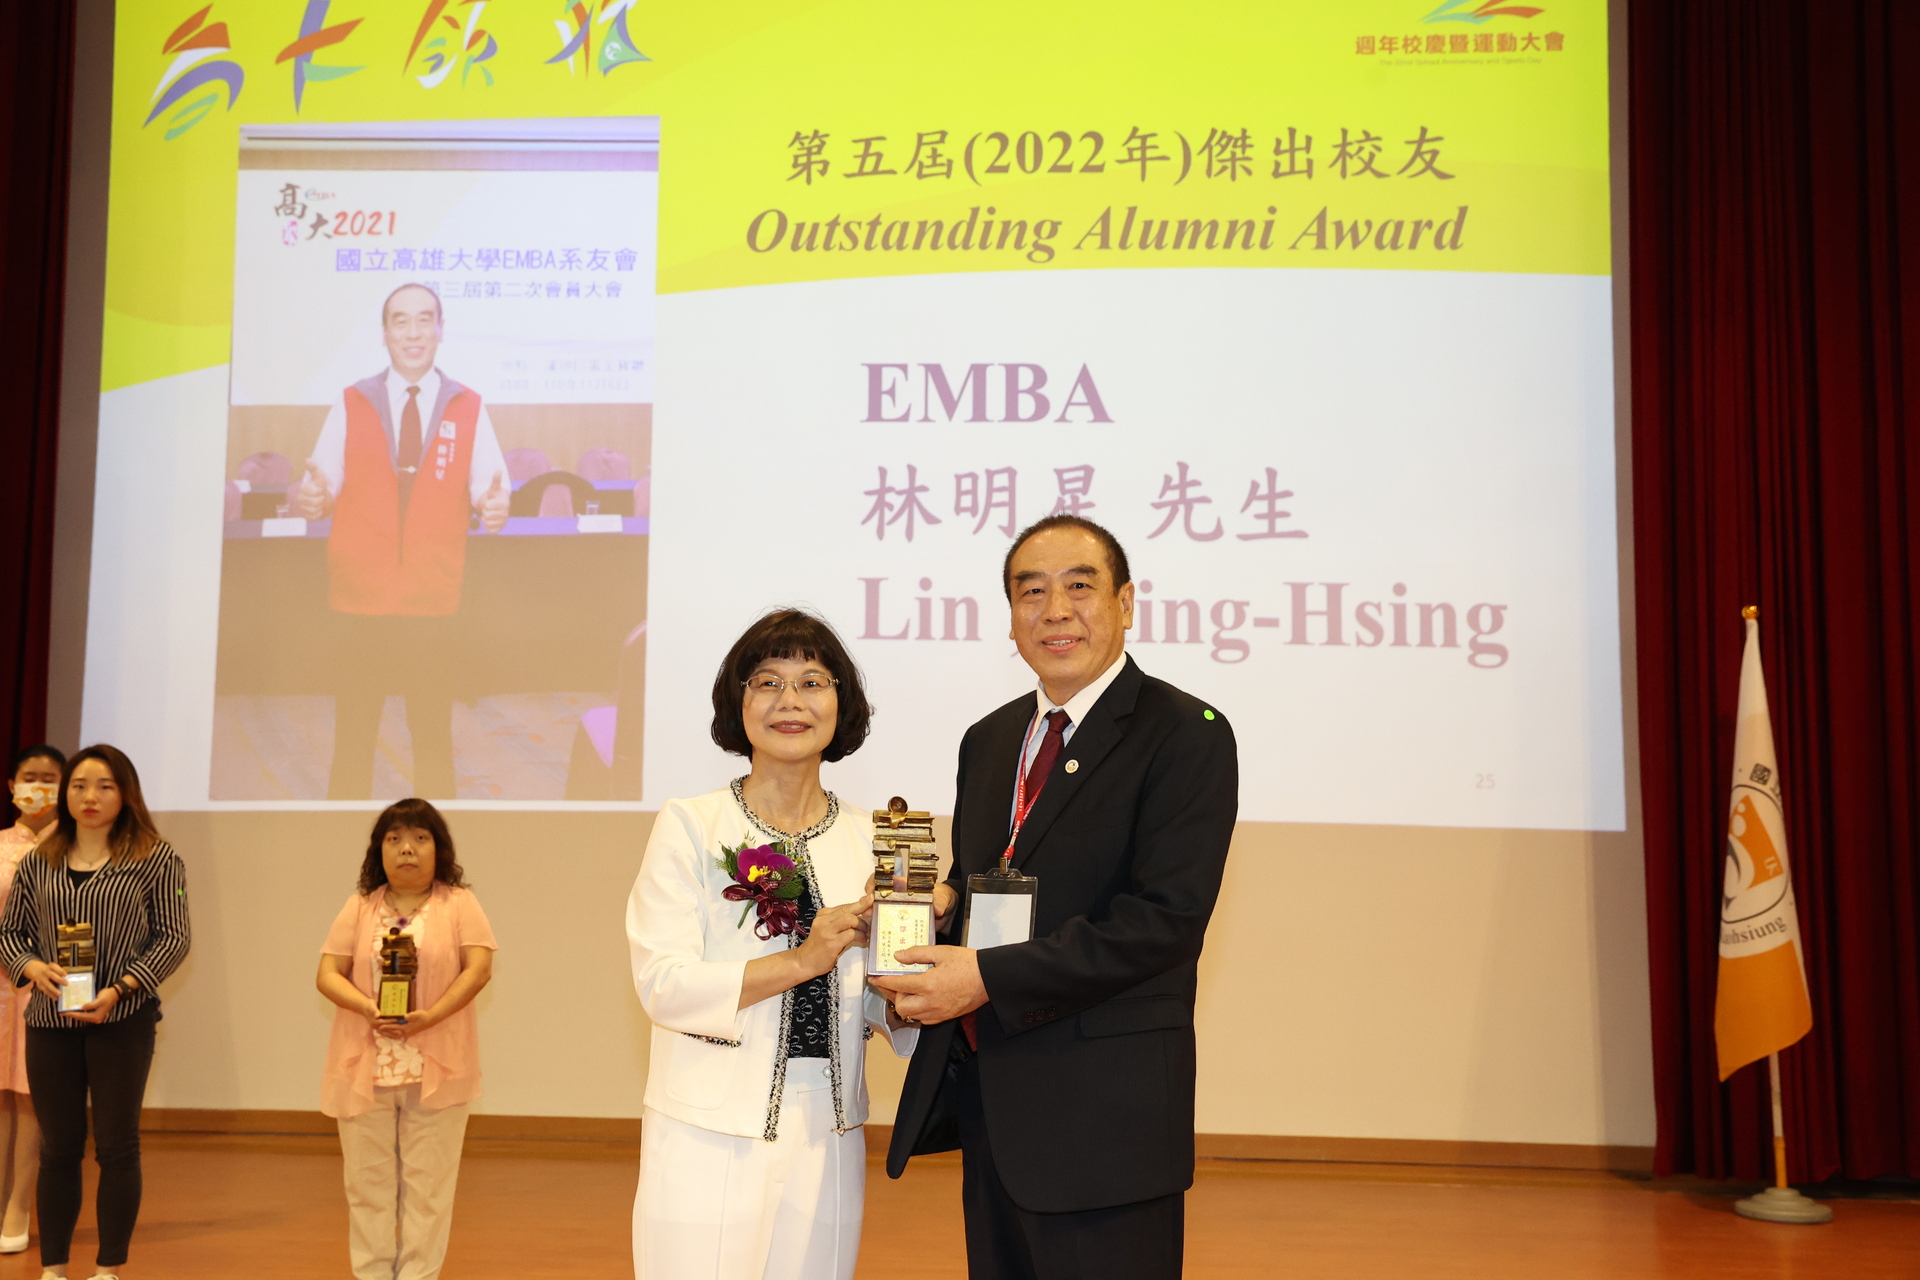 高雄大學校長陳月端（左）頒贈傑出校友獎座予EMBA碩士、喬通實業有限公司董事長林明星。